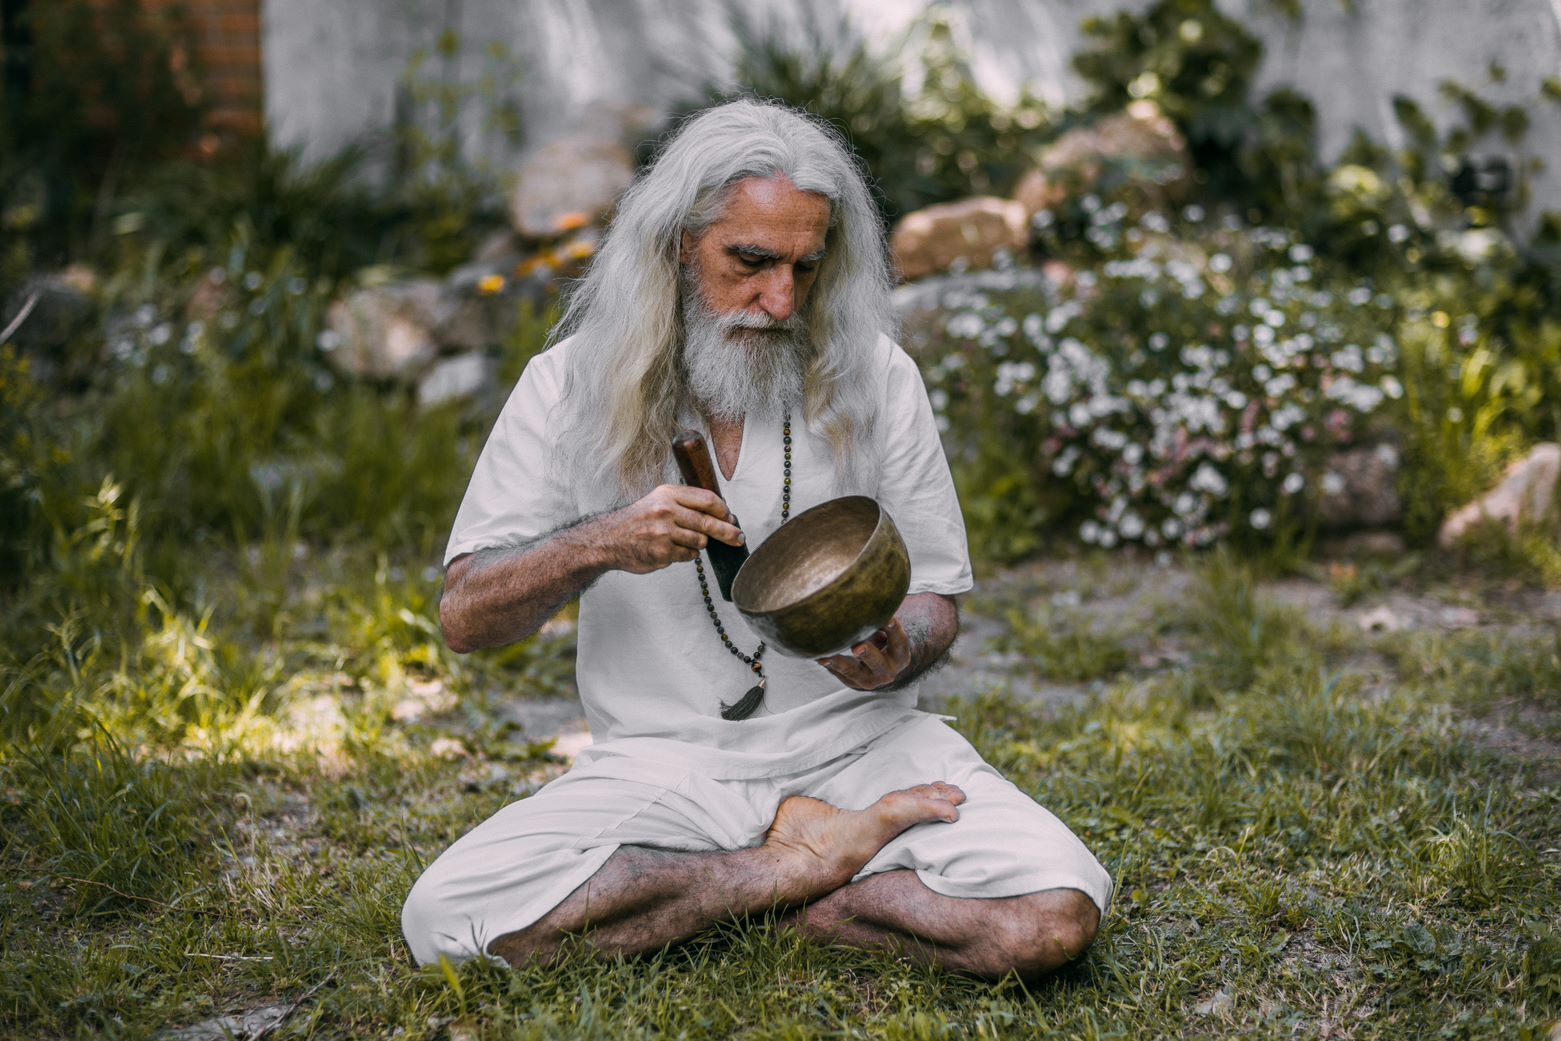 Vikrampal ha compuesto algunas de las msicas con las que practica sus meditaciones.